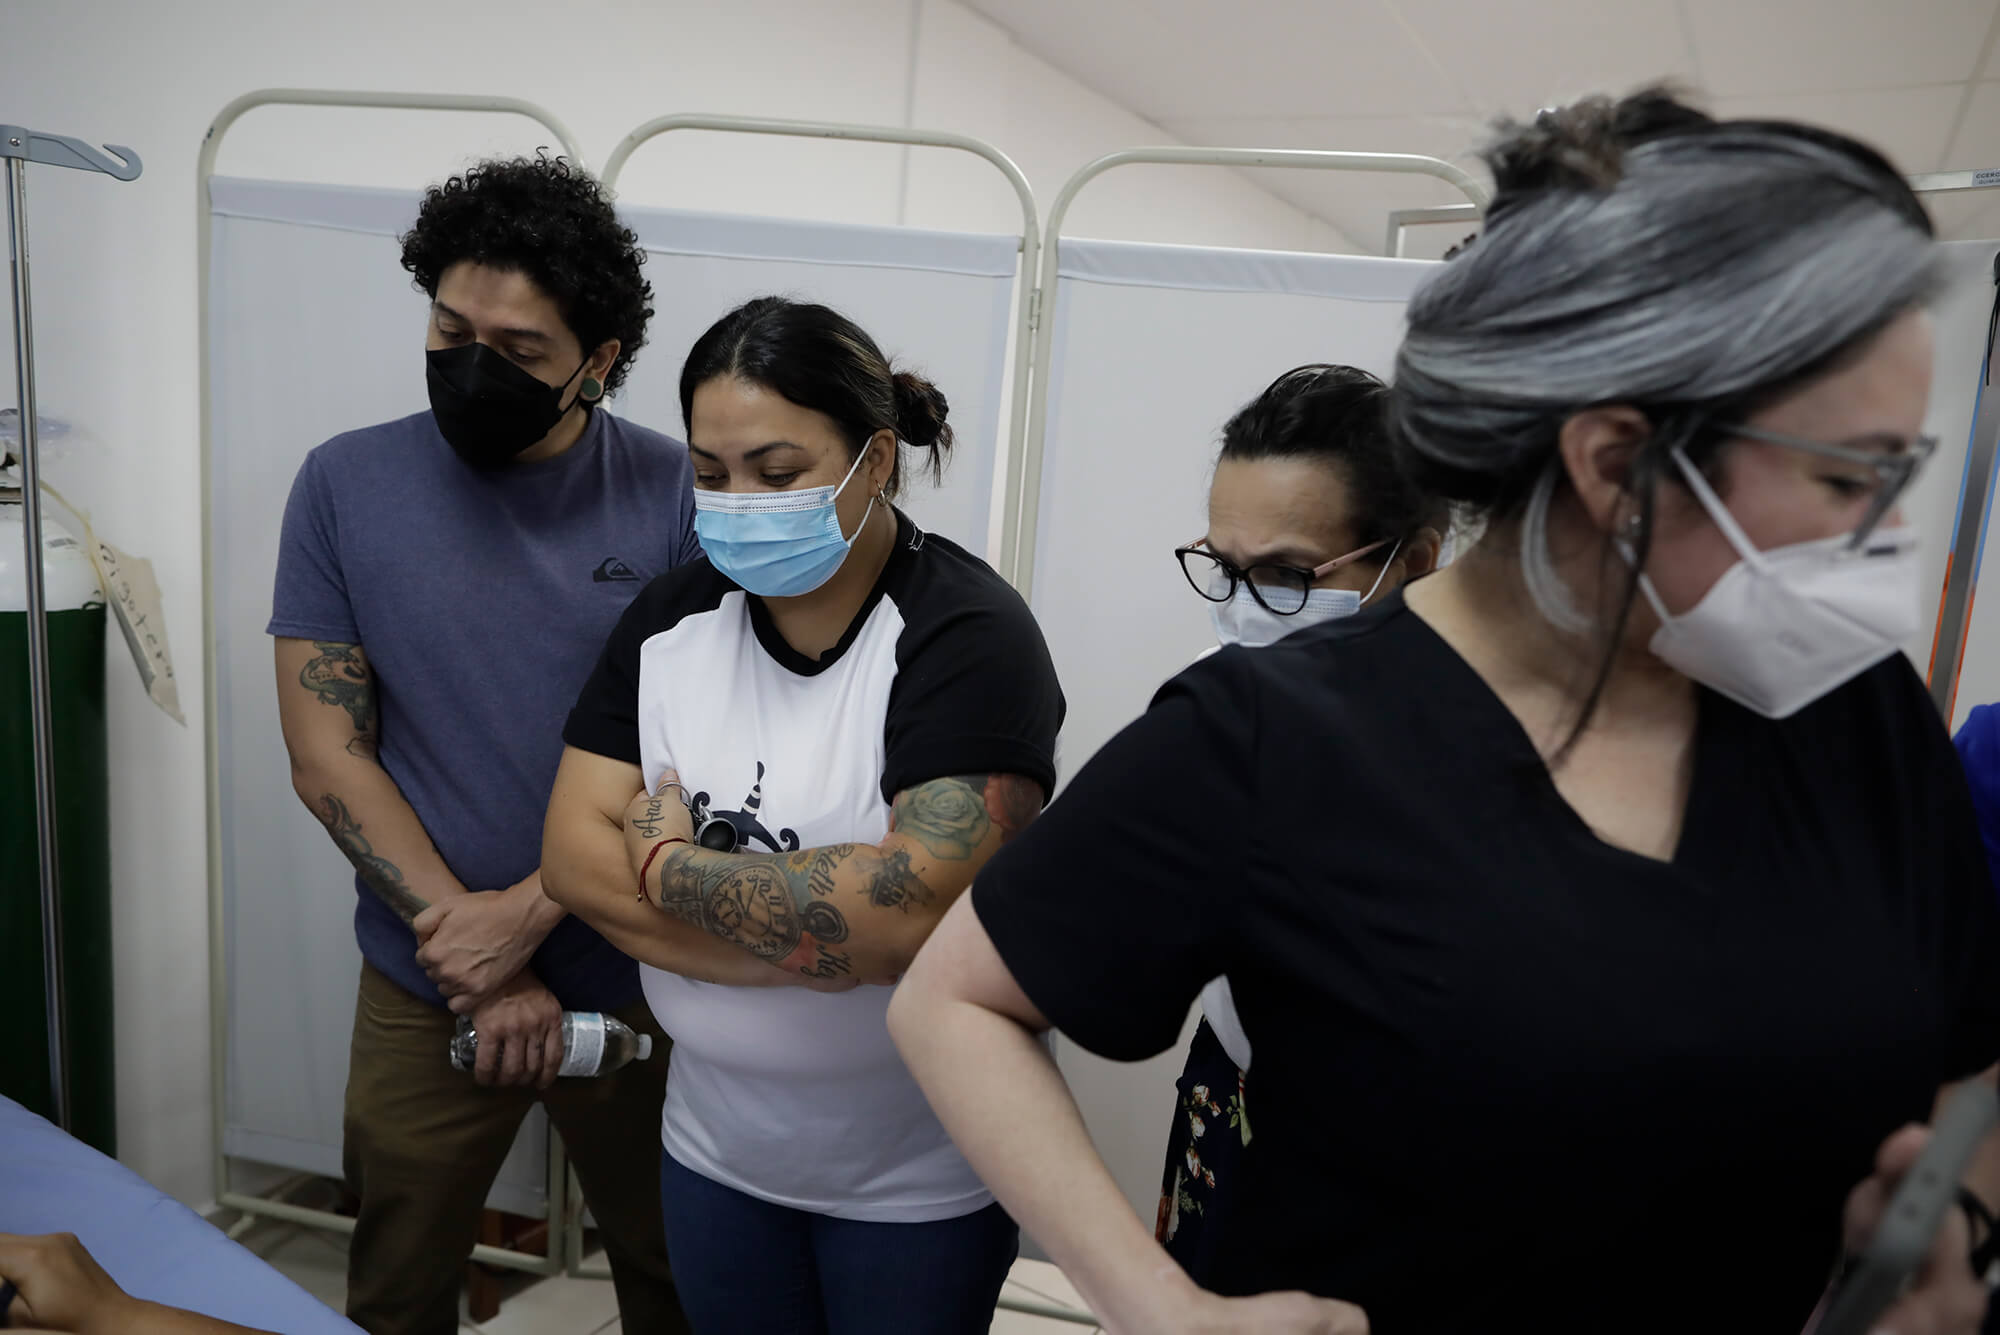 Tatuadores de Honduras hicieron parte del momento de aprendizaje para seguir el proyecto del tatuador argentino. Foto CC/Jorge Cabrera